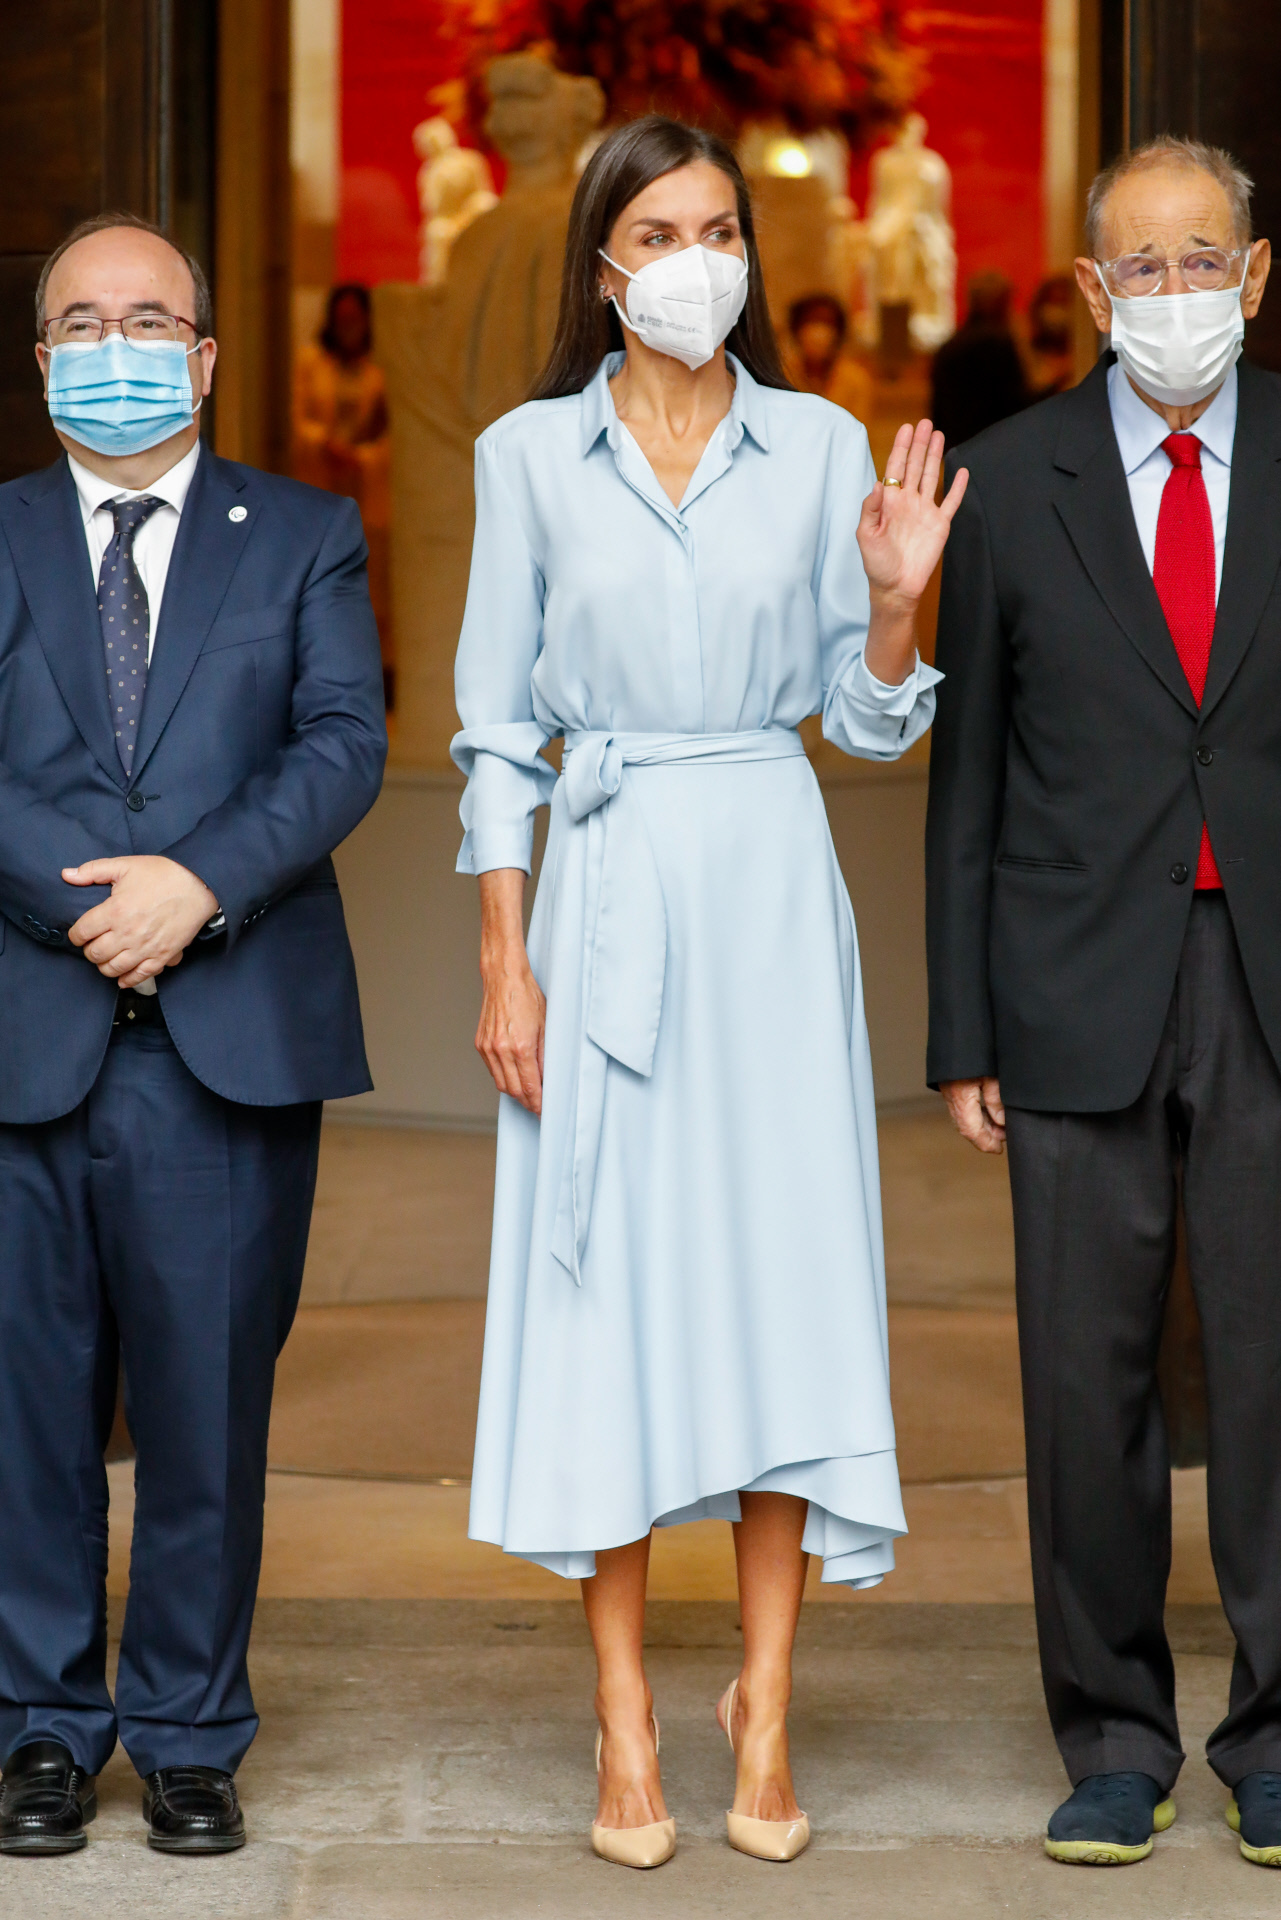 La reina Letizia opta por el azul en su vestido camisero